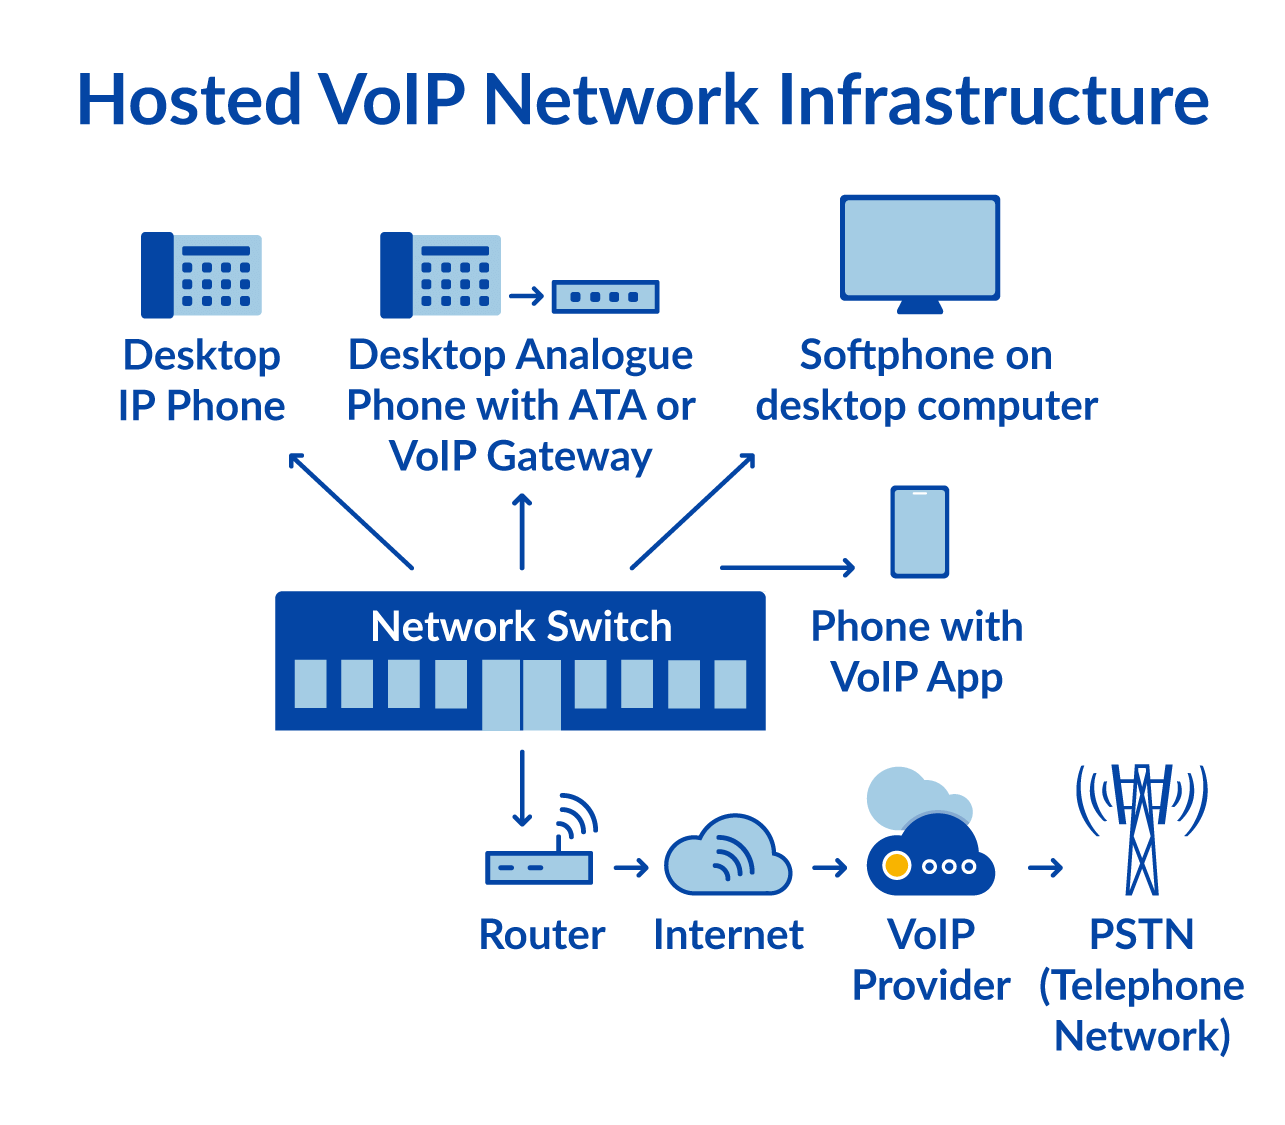 Diagrama de uma infraestrutura VoIP hospedada (2019)